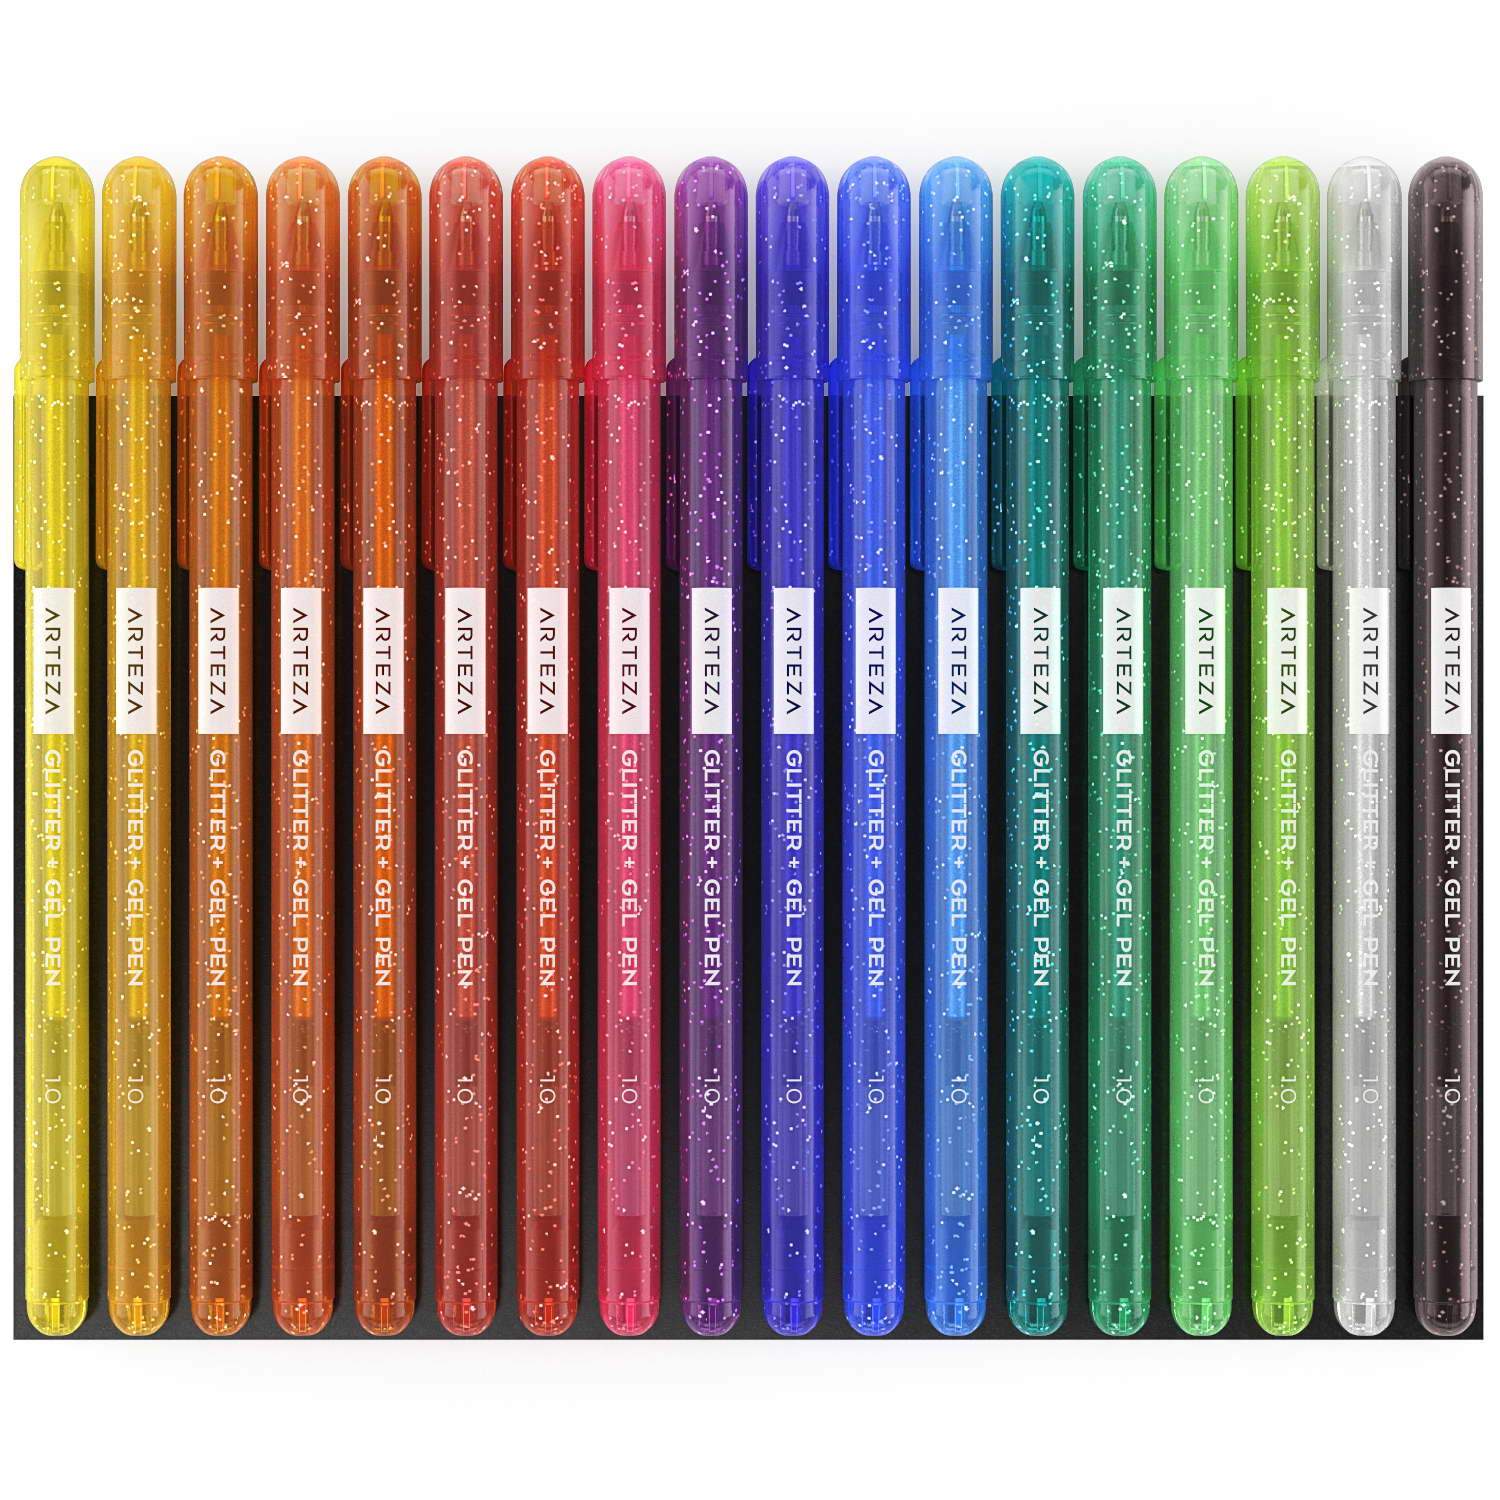 https://arteza.com/cdn/shop/products/super-glitter-gel-pens-set-of-18_69Cp_aUs.jpg?v=1690384065&width=1946